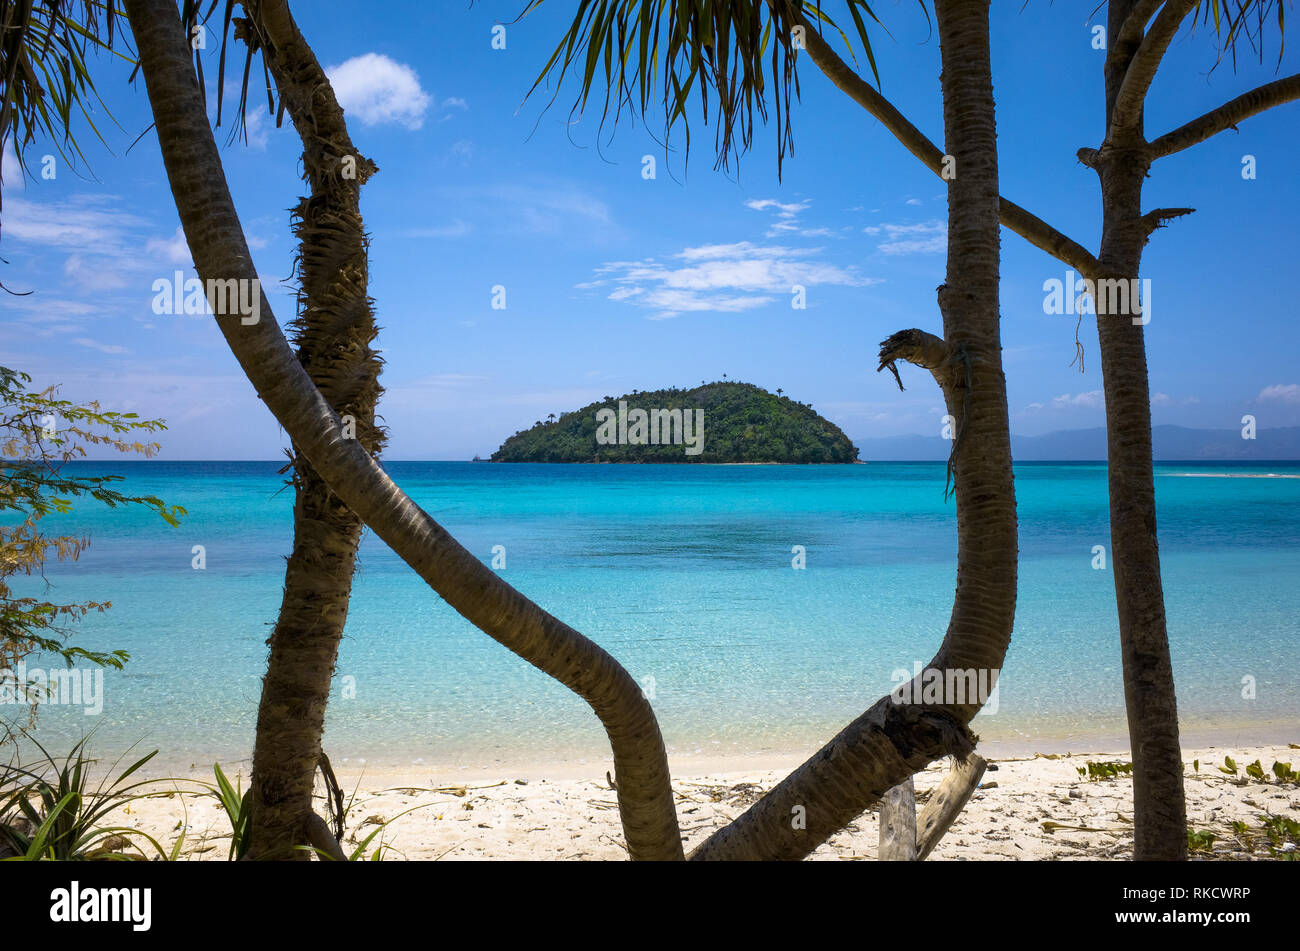 Kleine Insel Insel im türkisblauen Meer, Blick durch Dschungel Bäume - Bonbon Strand - Romblon, Philippinen Stockfoto